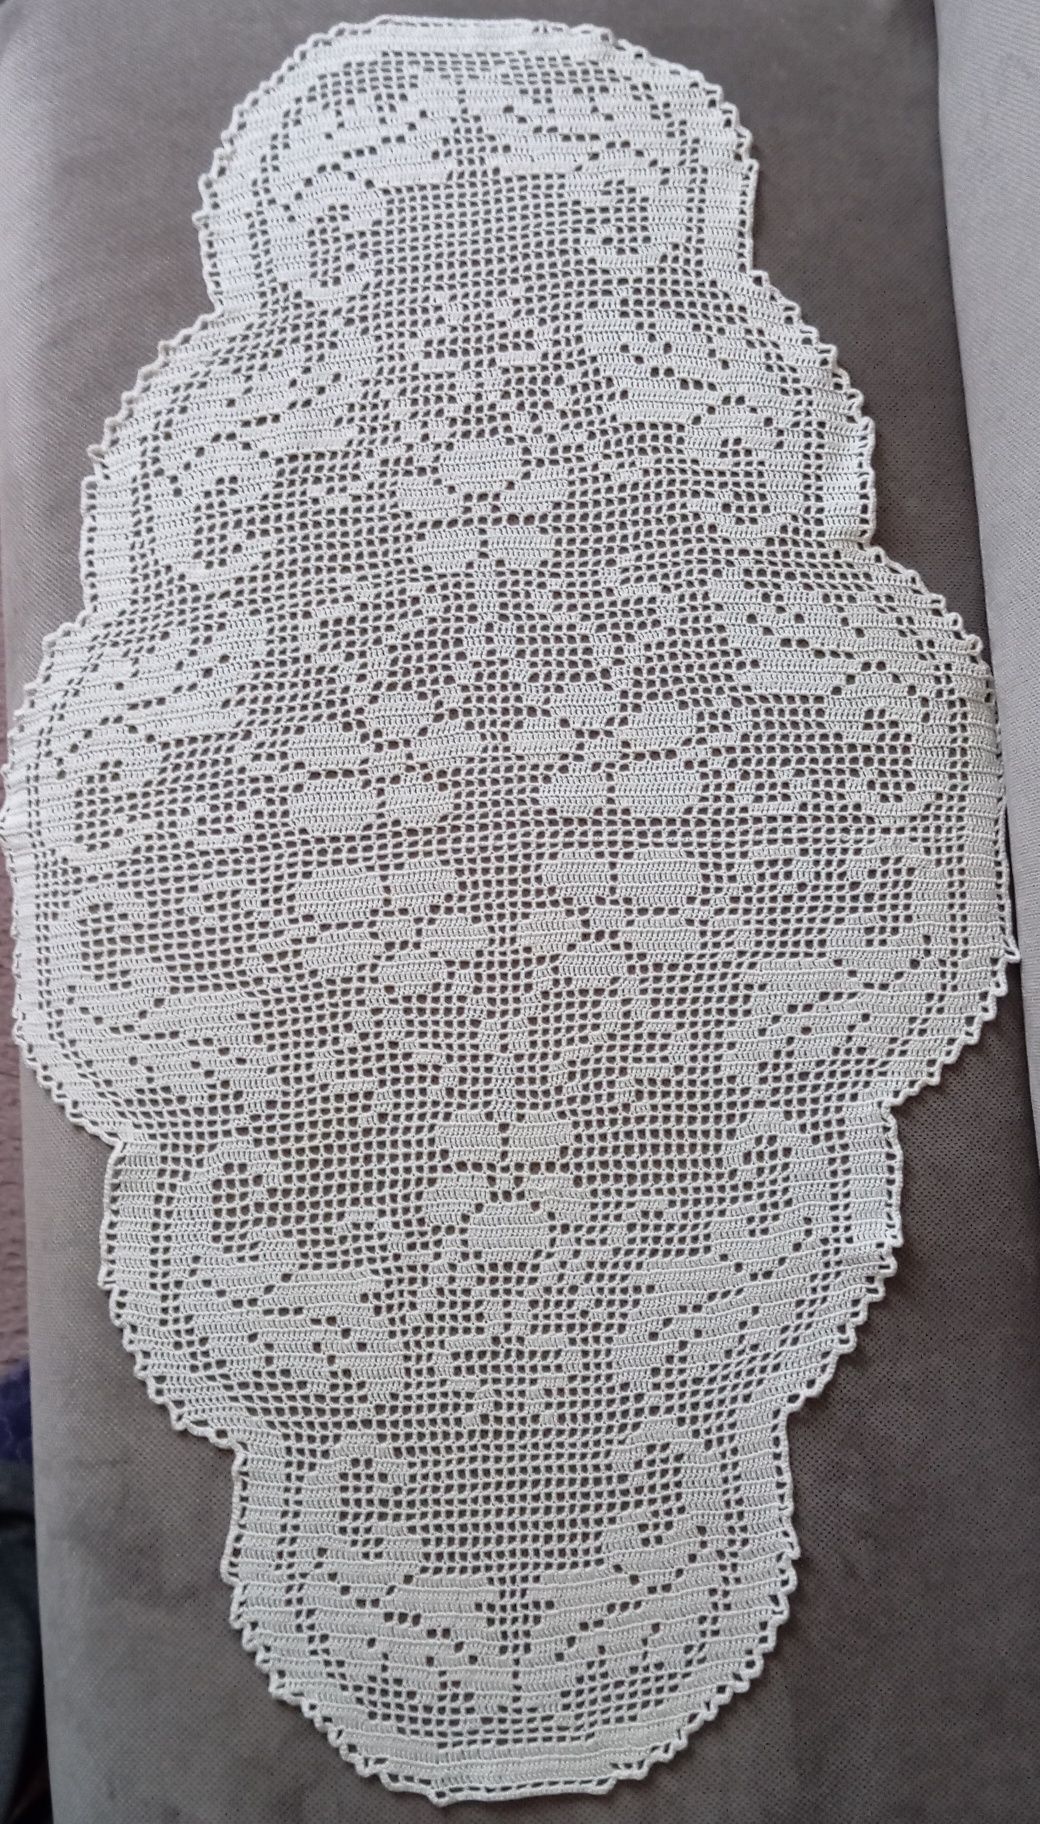 Biała szydełkowa serweta, wymiary: 100 x 60 cm